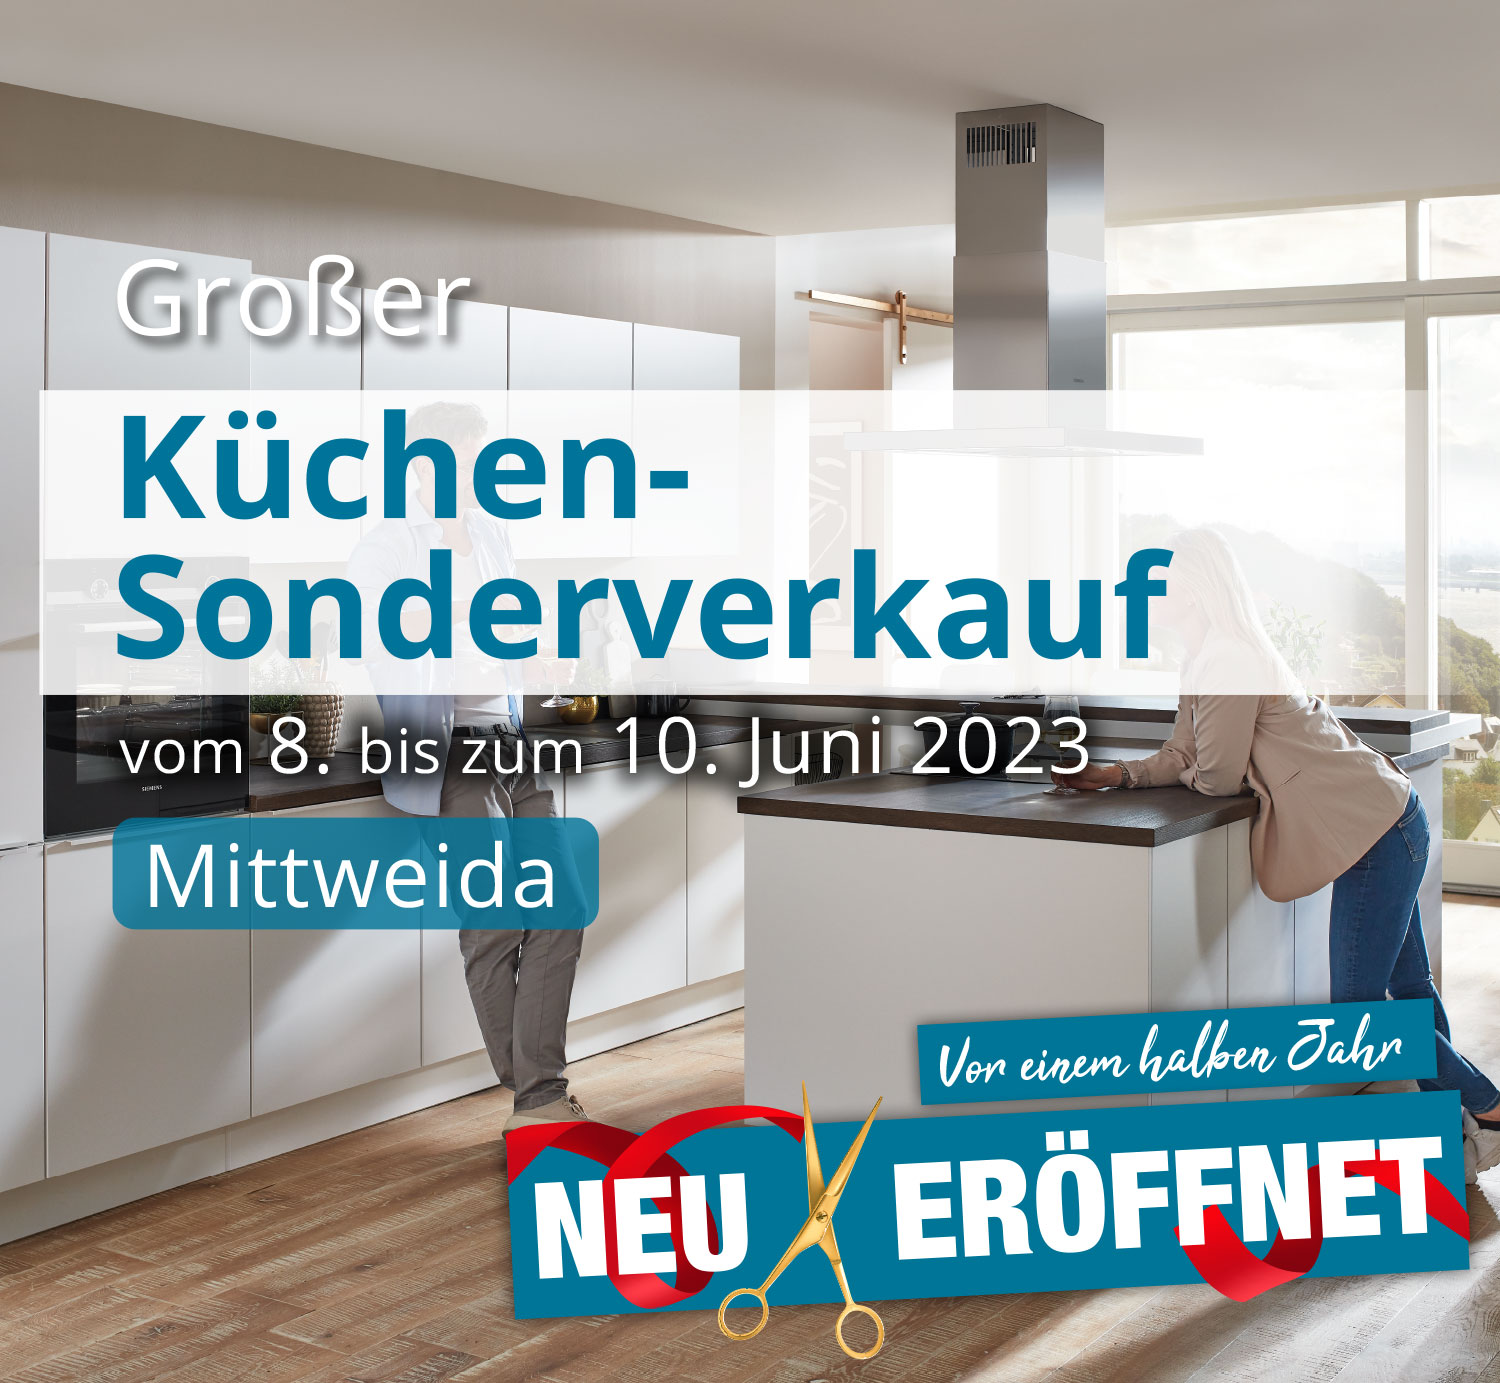 Großer Küchen-Sonderverkauf vom 08. bis zum 10. Juni 2023 in Mittweida!